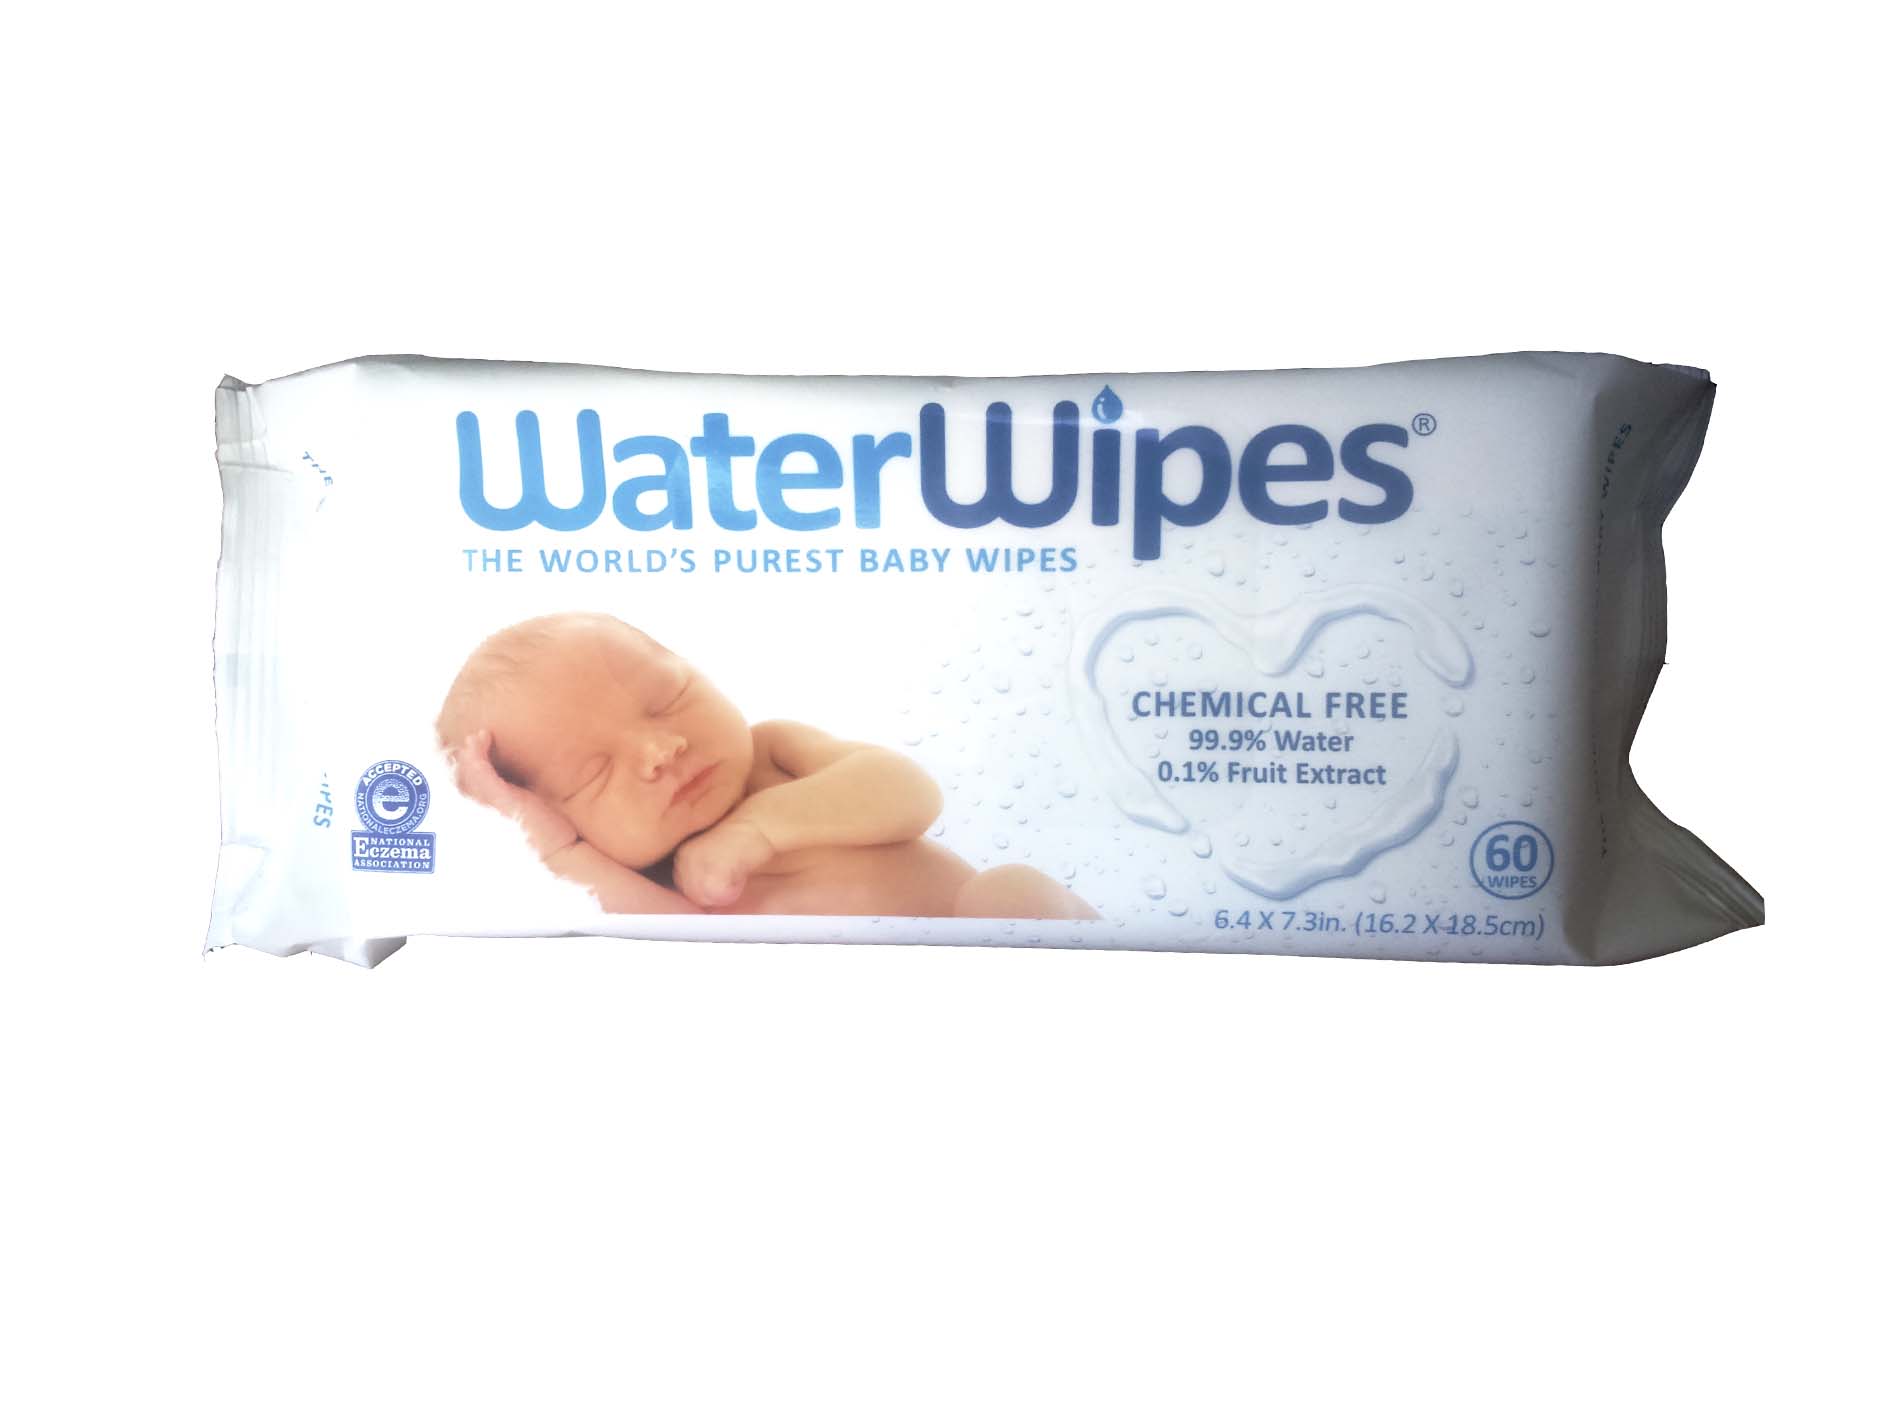 Toallitas Water Wipes libres de químicos: características y precios